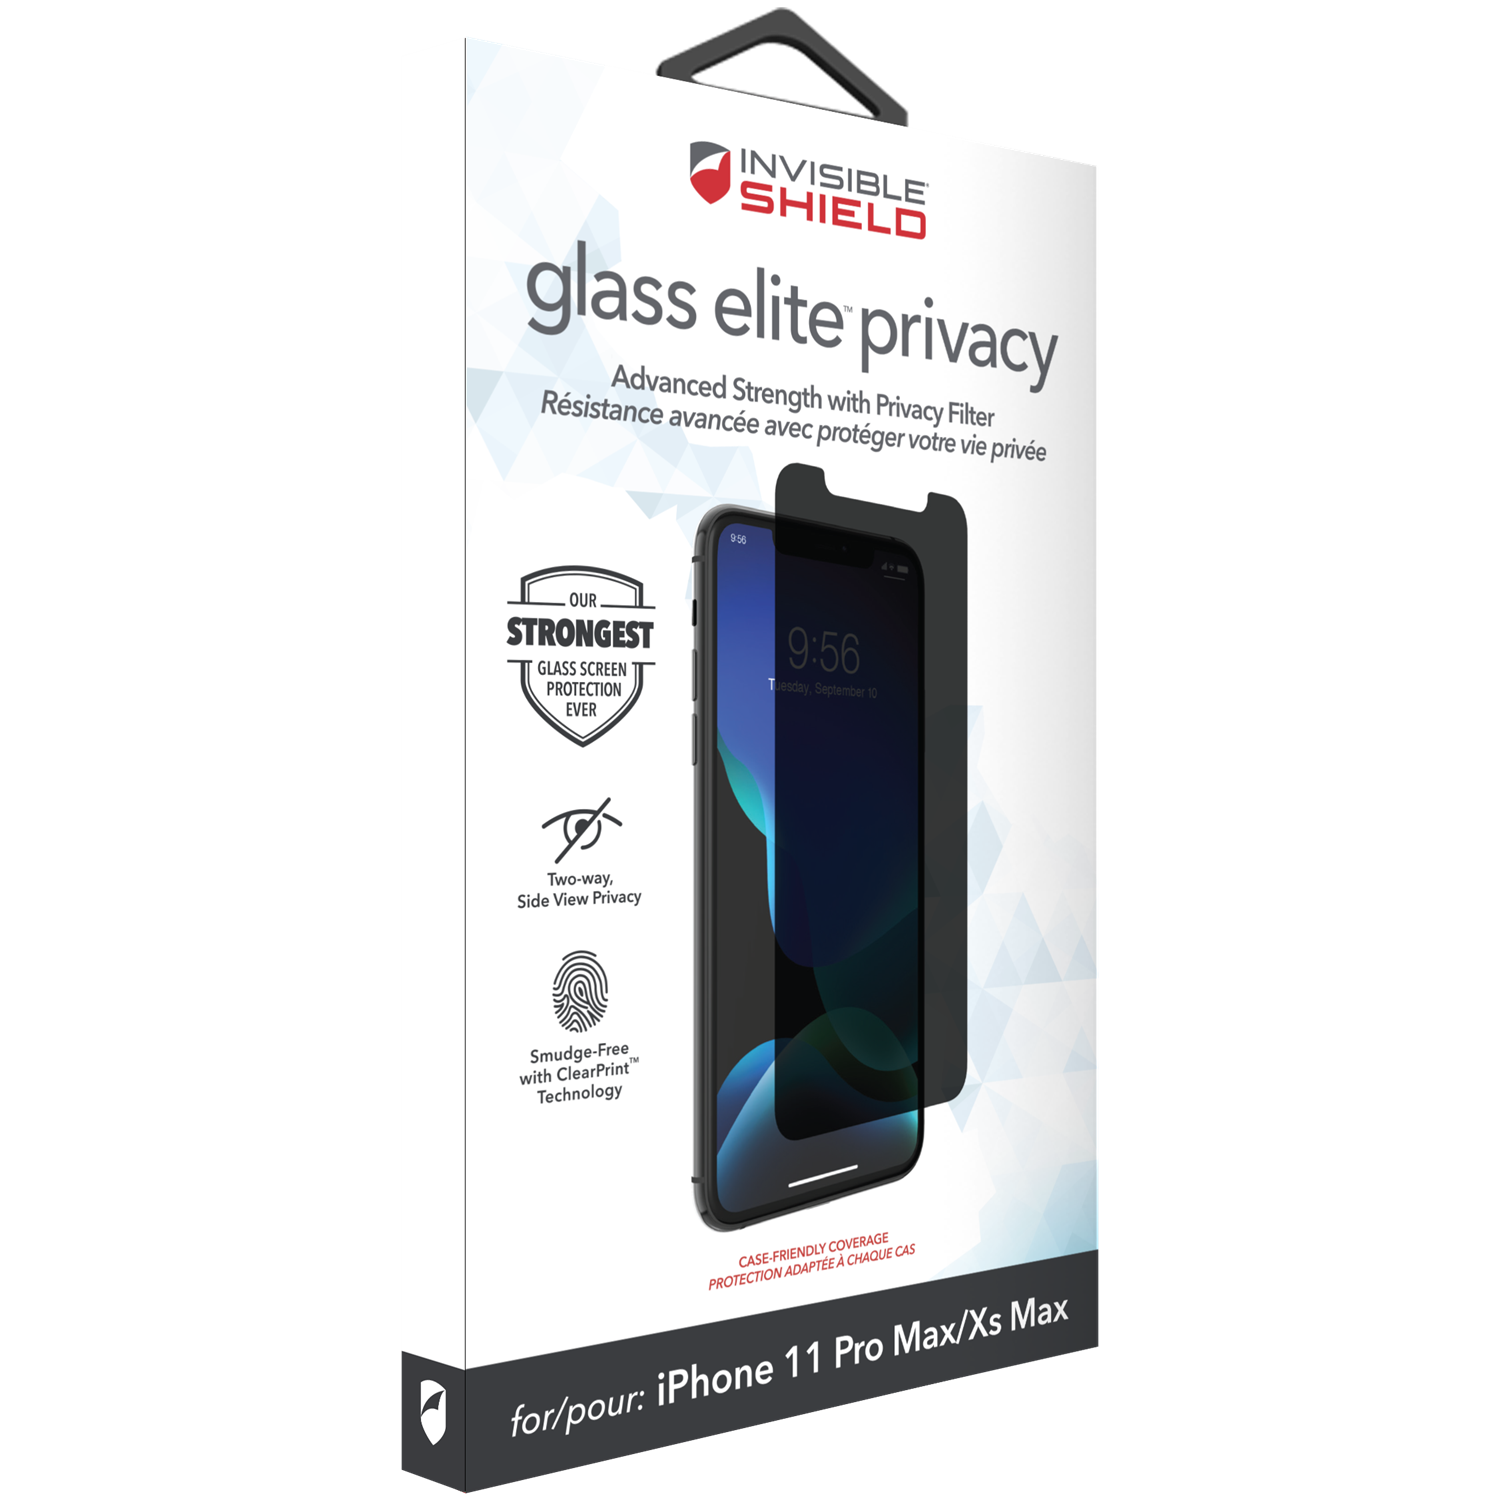 InvisibleShield Glass Elite Privacy iPhone XS Max/11 Pro Max